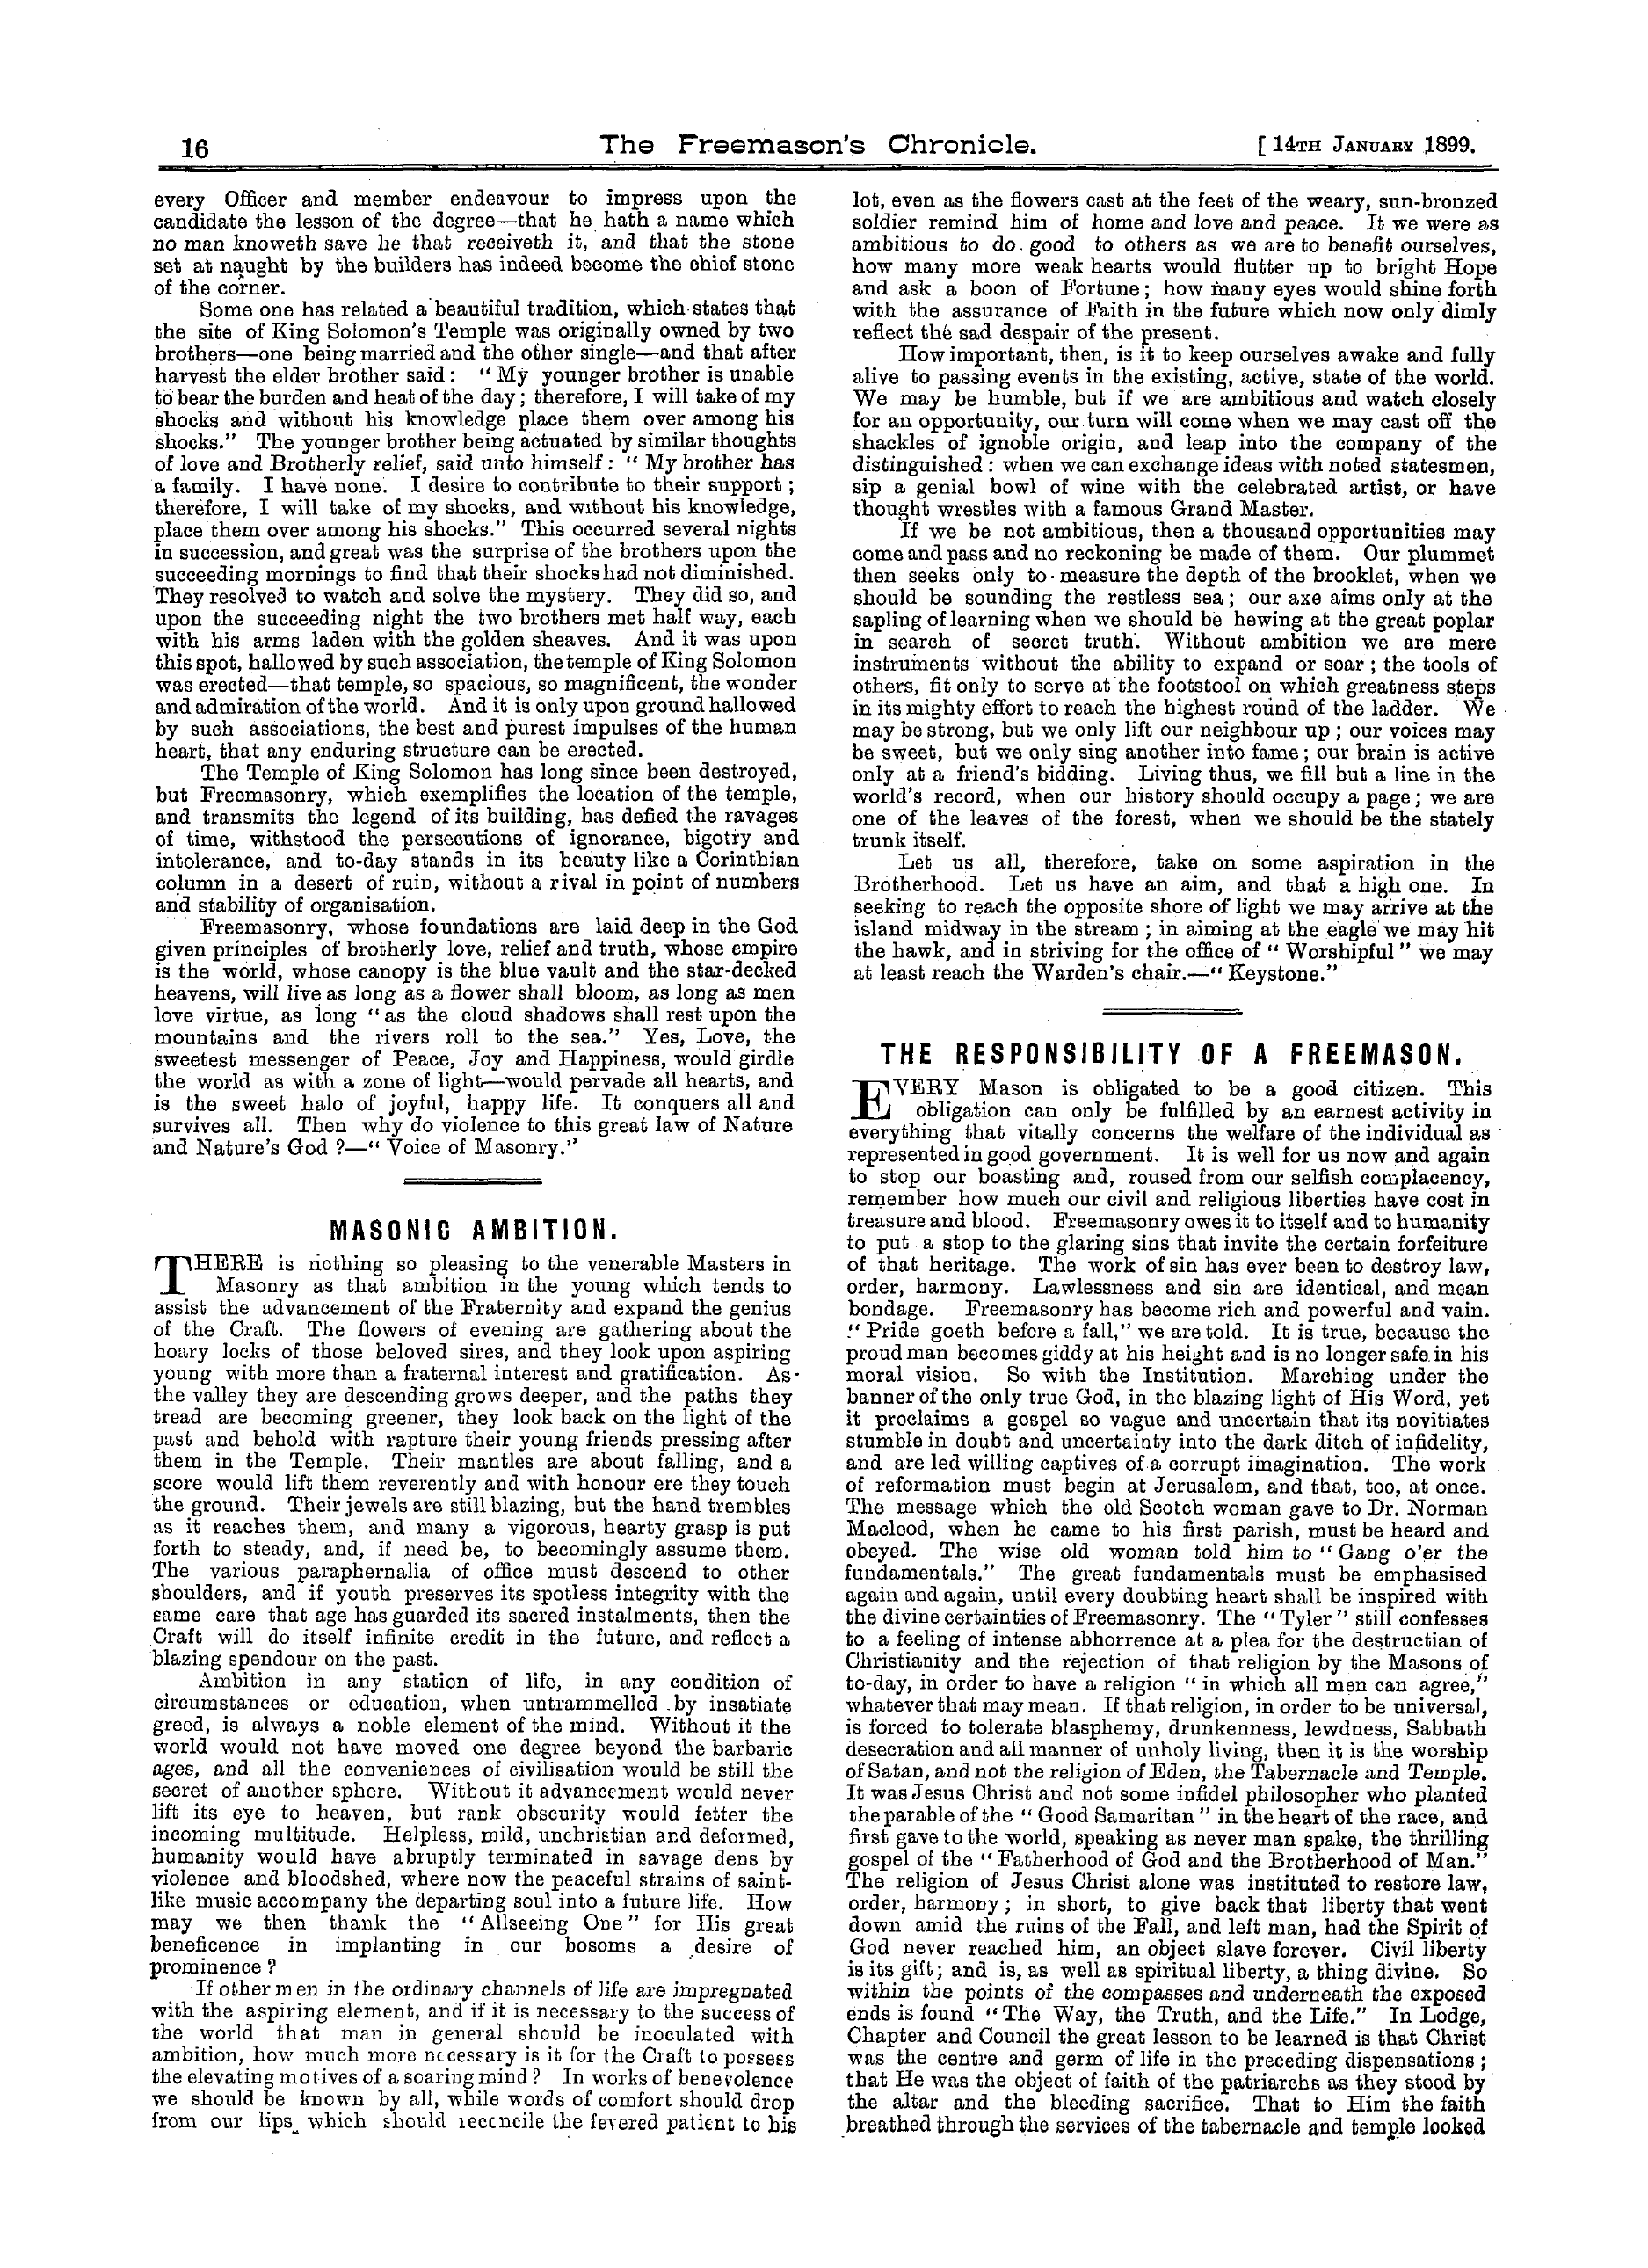 The Freemason's Chronicle: 1899-01-14 - Masonry's Consummation.